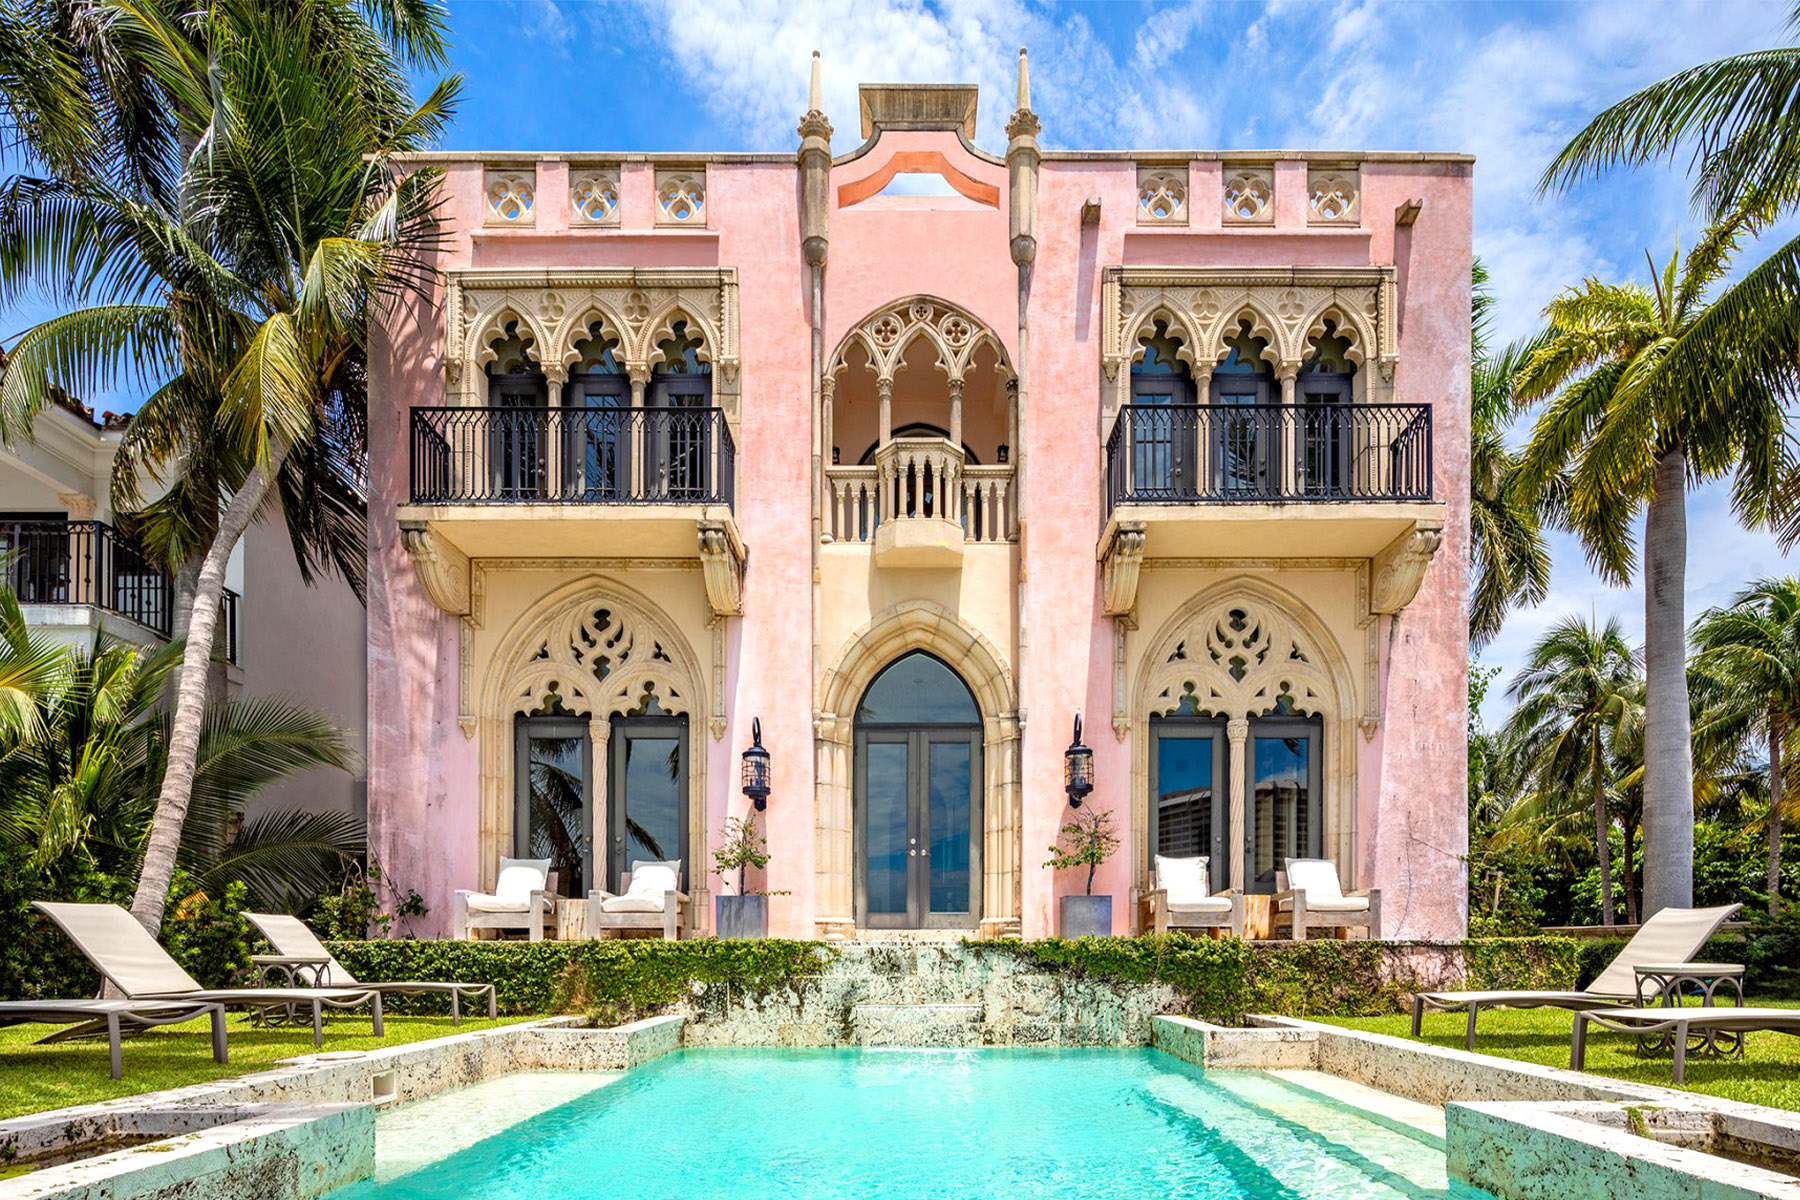 Bill Hutchinson's home in Miami